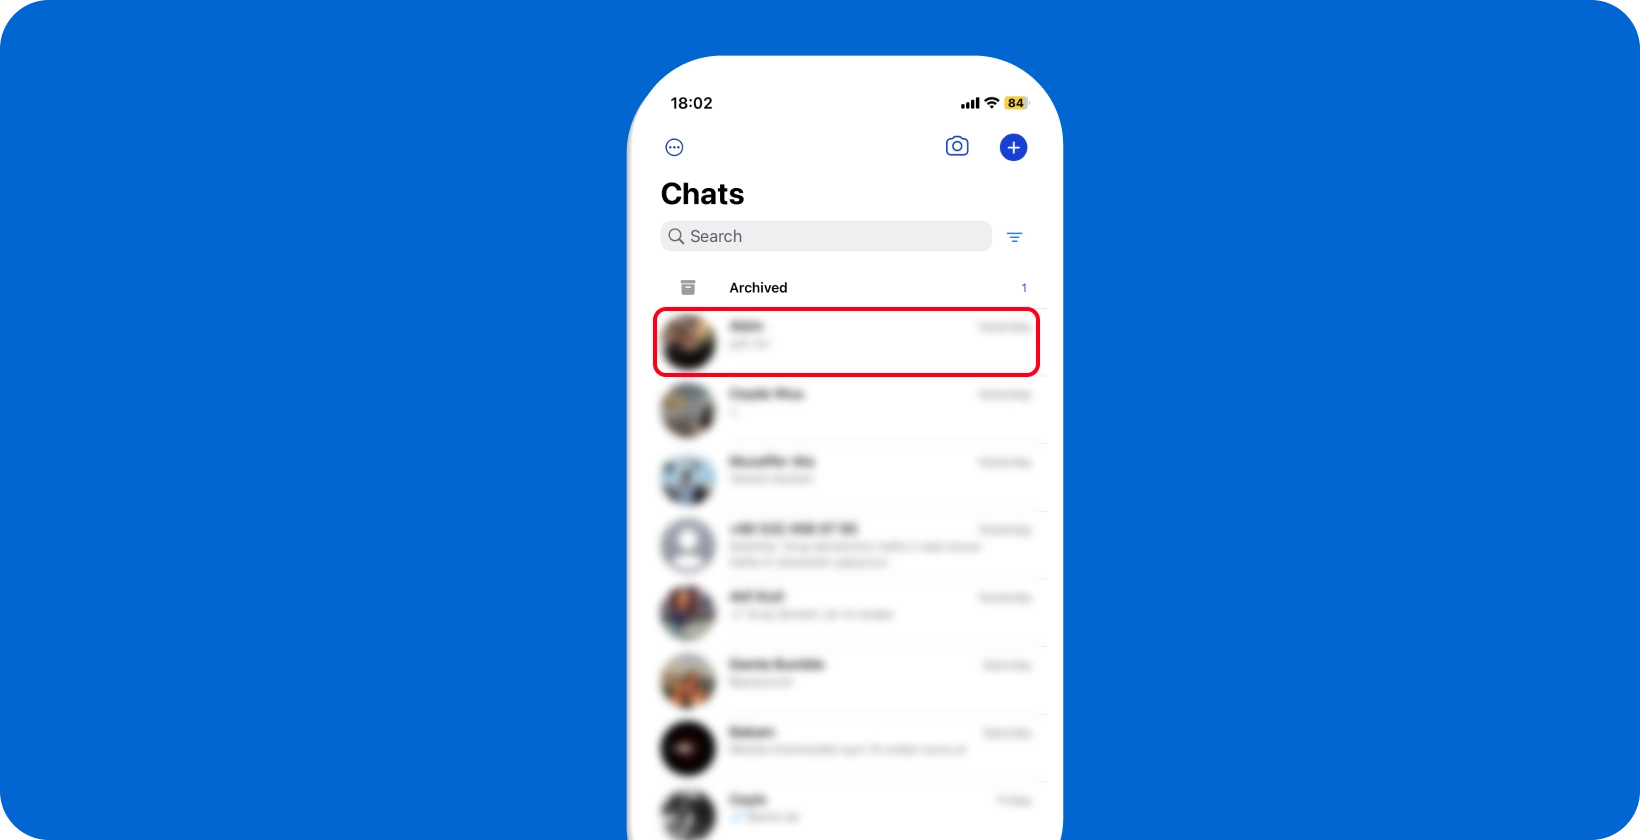 Écran de chat WhatsApp montrant un aperçu des conversations, prêt pour l’interaction et la dictée de l’utilisateur.